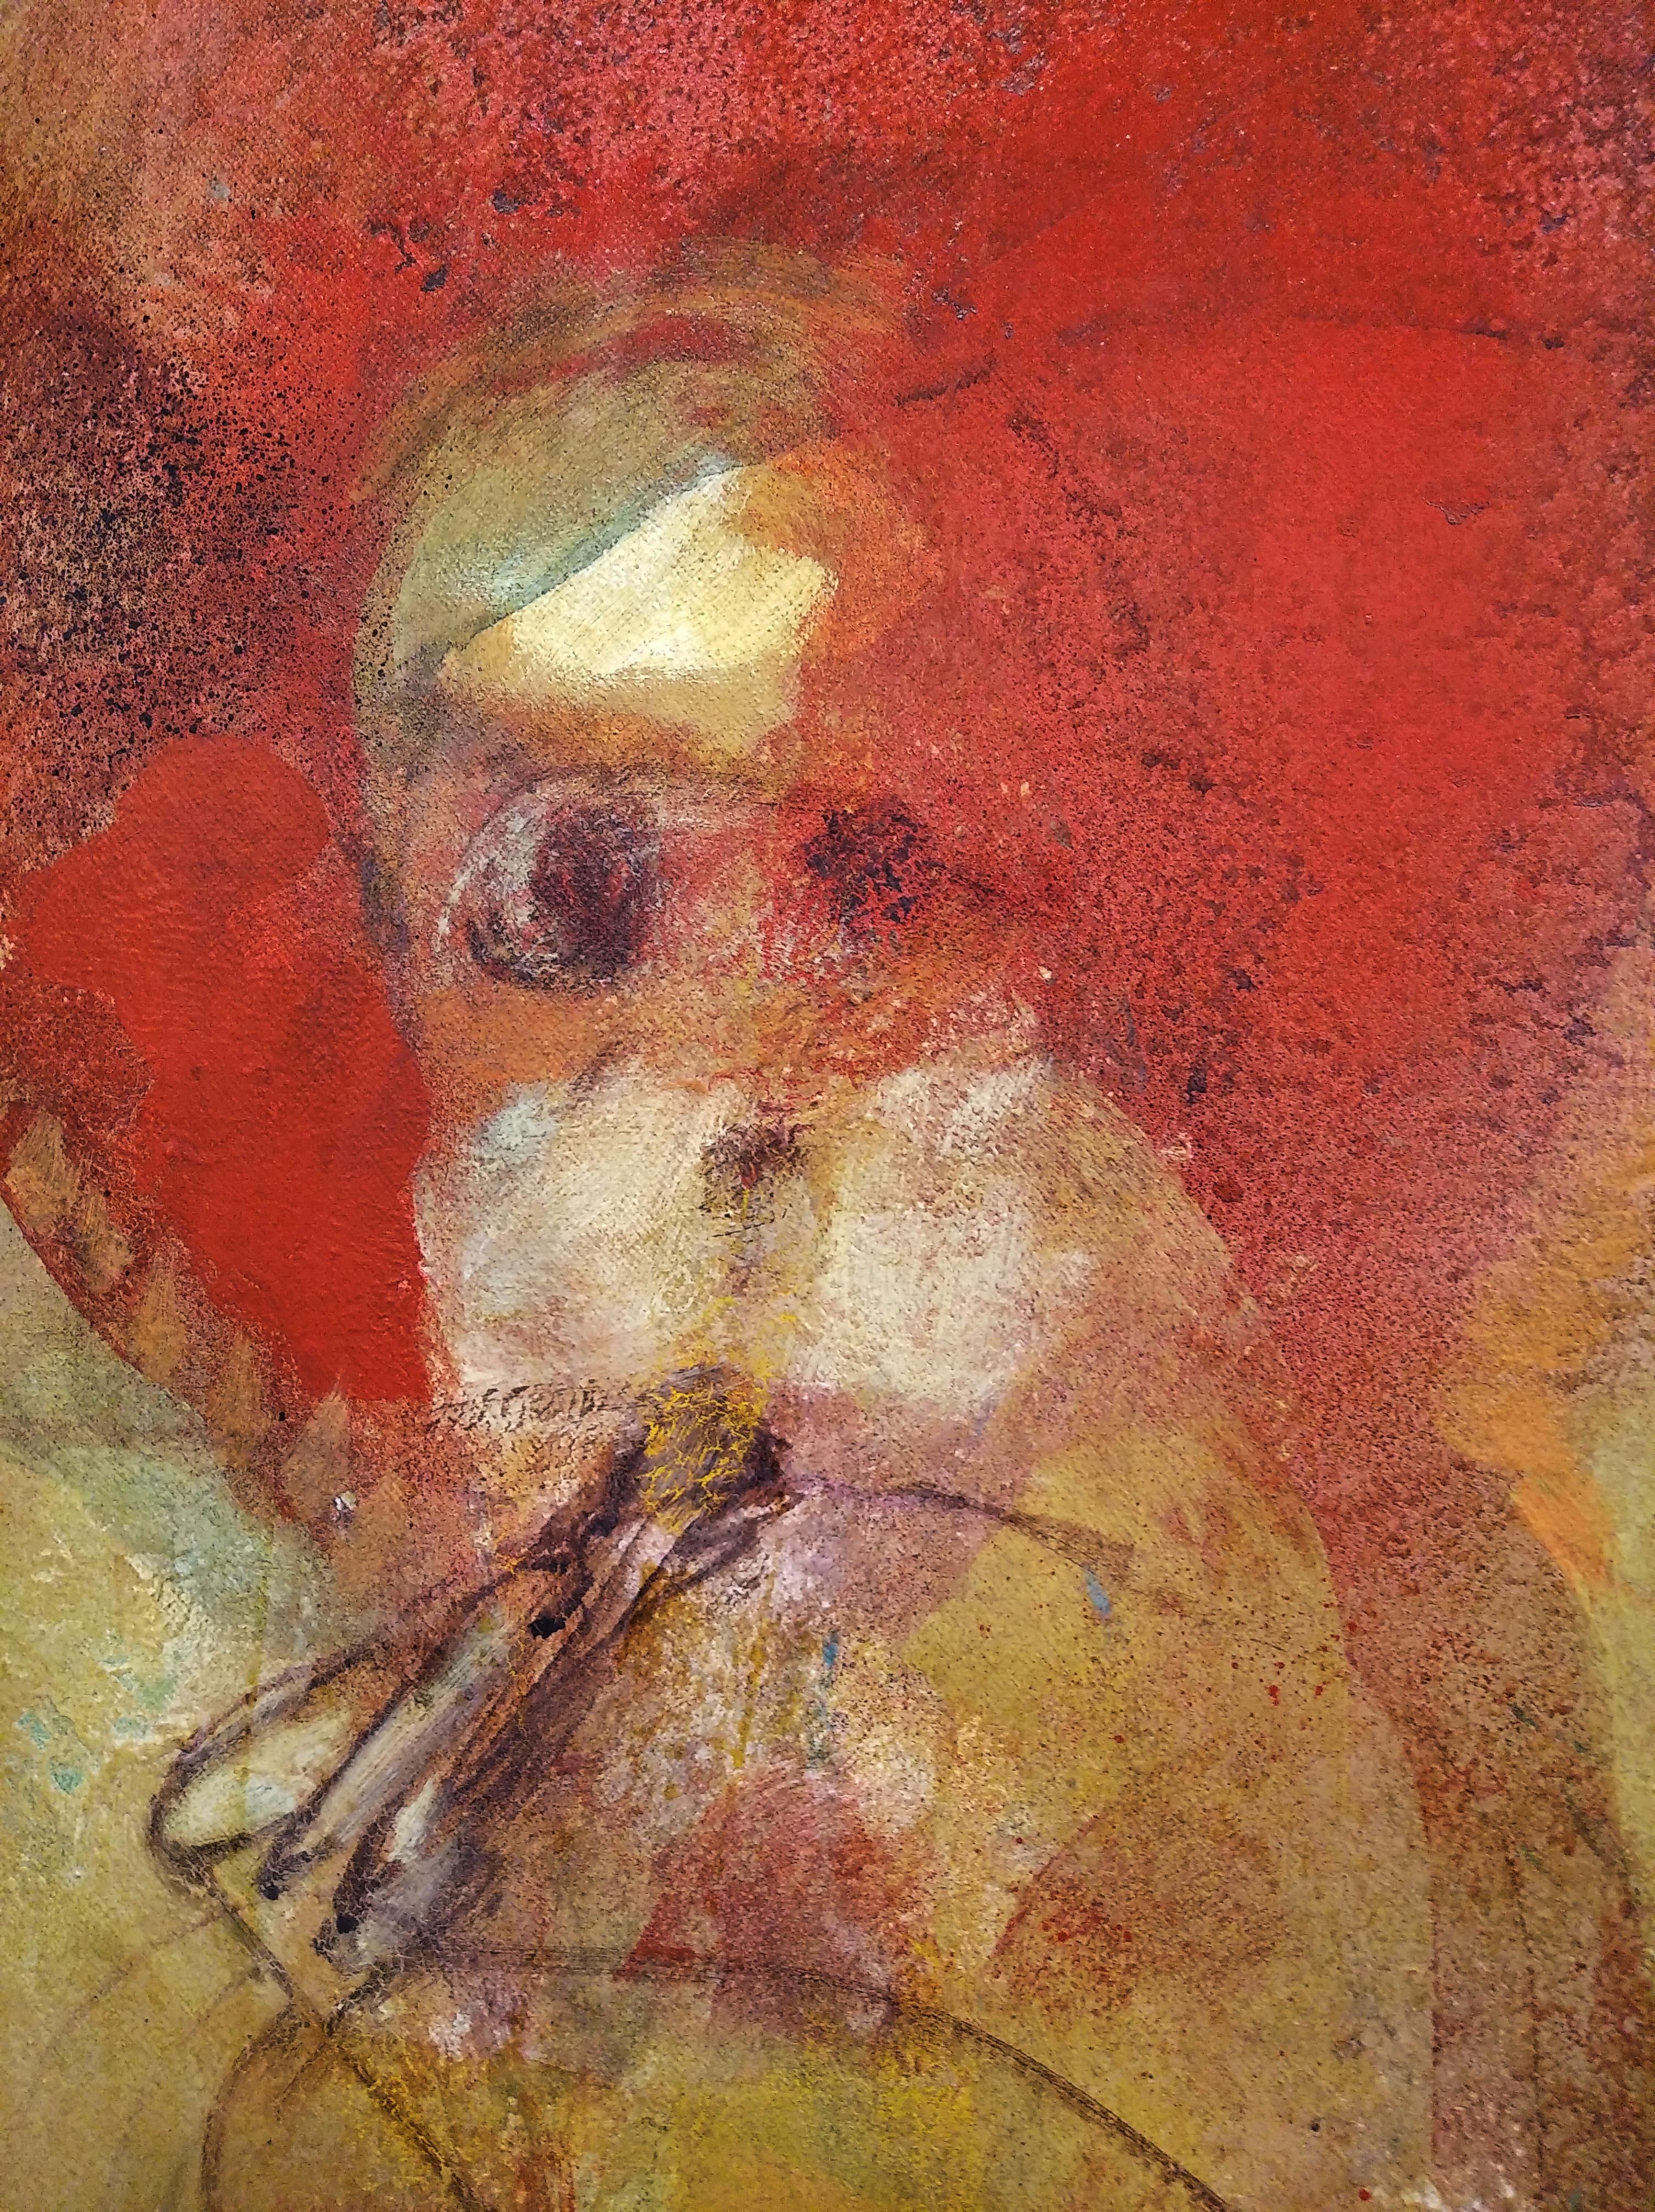 sin titulo. peinture acrylique
(CARLOS MENDEZ, ARGENTINE, 1943)
 
 Carlos Méndez est un artiste plasticien argentin de grande projection, basé à Barcelone depuis les années quatre-vingt. Il utilise une figuration héritée des avant-gardes du début du